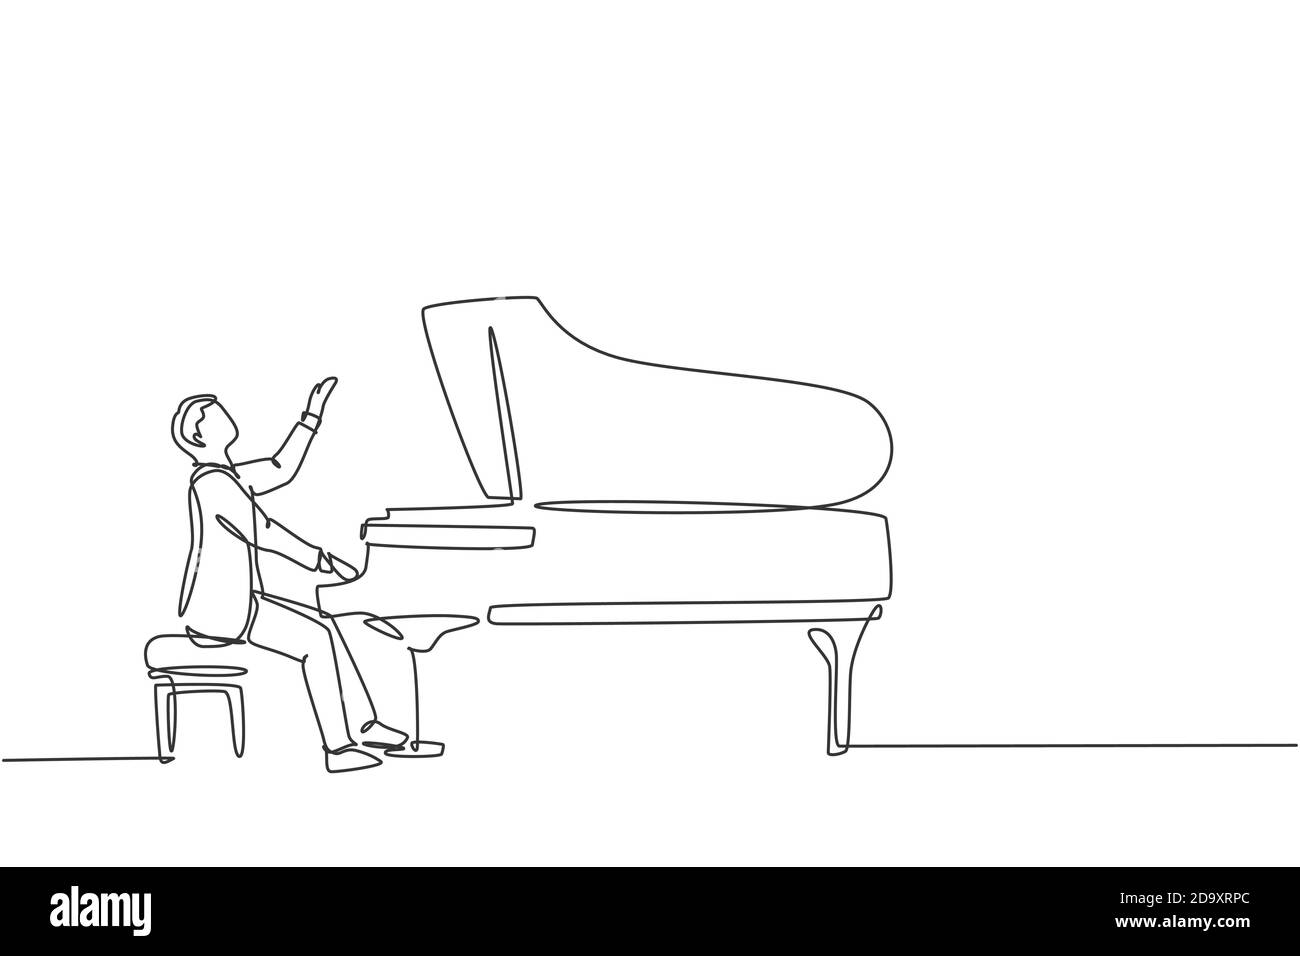 Un dessin continu de jeunes hommes heureux pianiste jouant du piano à queue classique sur le festival de théâtre de concert de musique. Performance d'artiste musicien Illustration de Vecteur